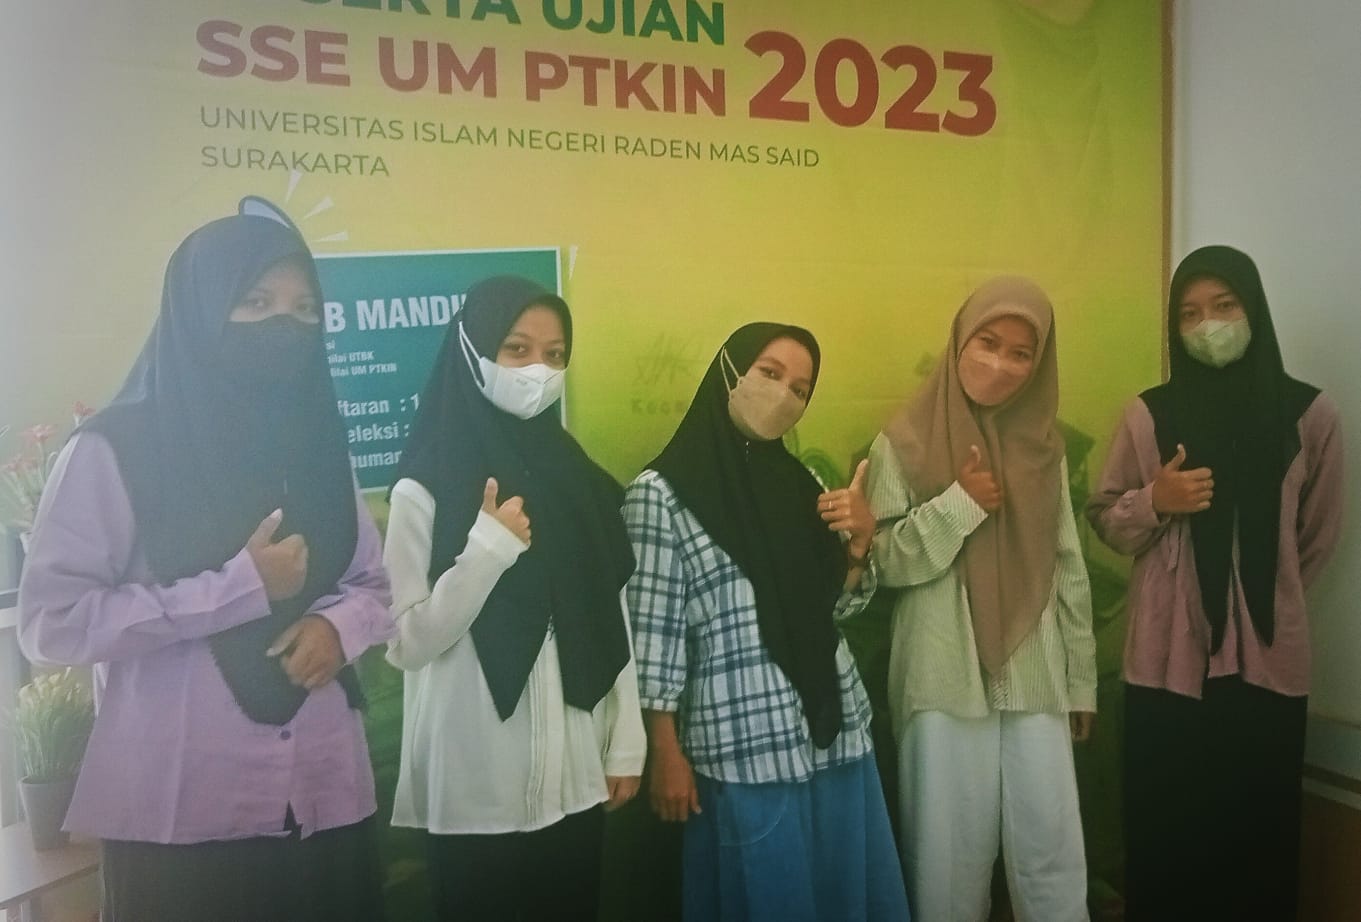 Peminat UIN Raden Mas Said Surakarta Capai 10.050 di UM-PTKIN 2023, Prodi Manajemen Bisnis Syariah Terbanyak Diminati